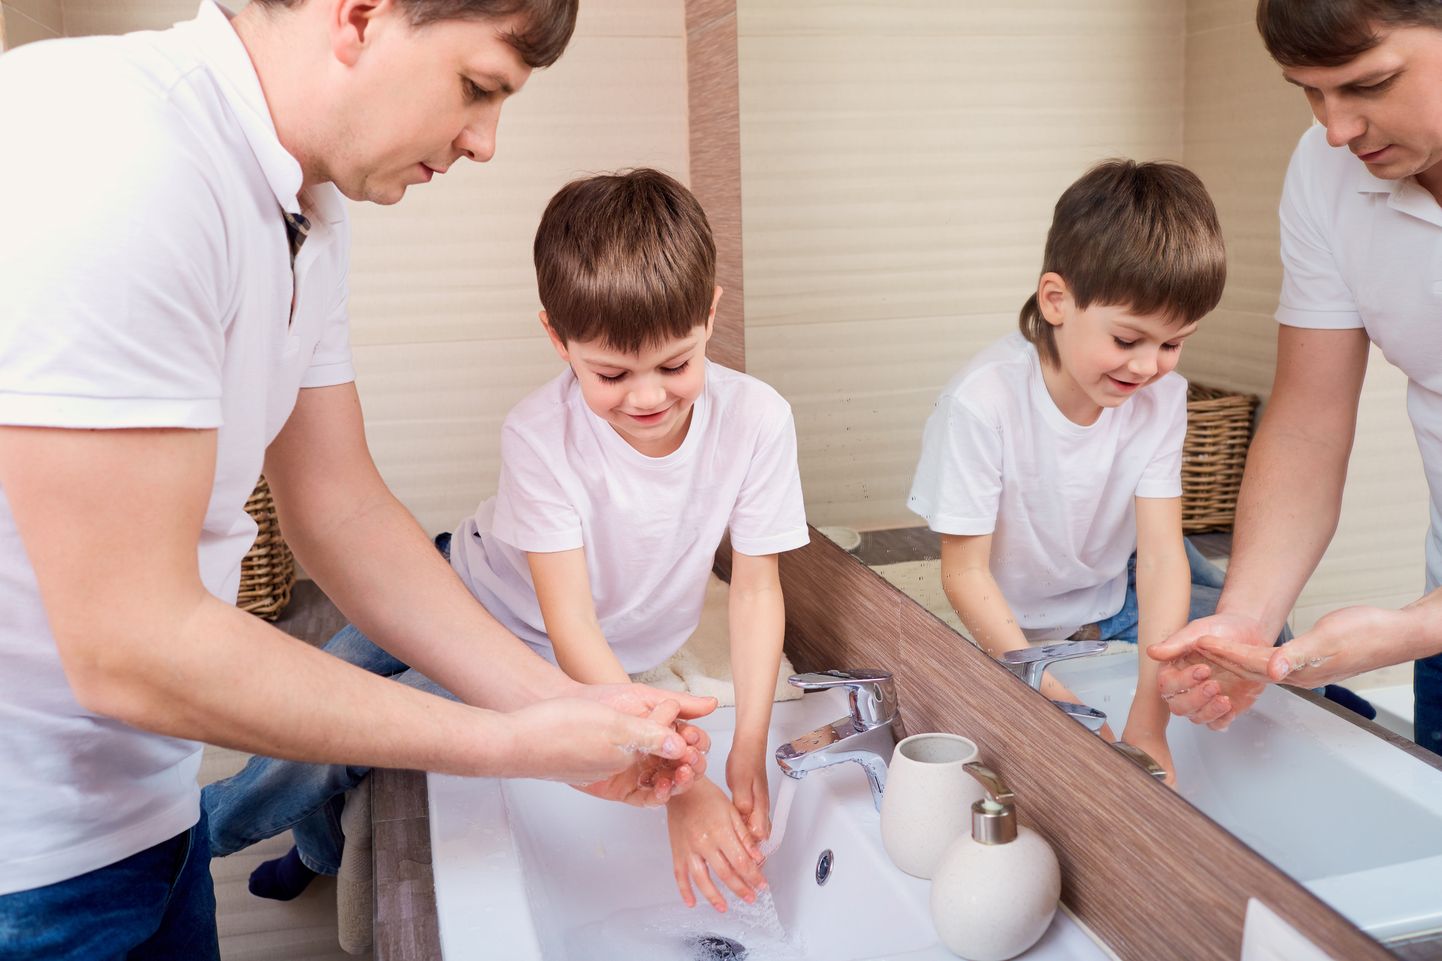 Õige kätepesu on oluline, et vältida haiguste levikut.